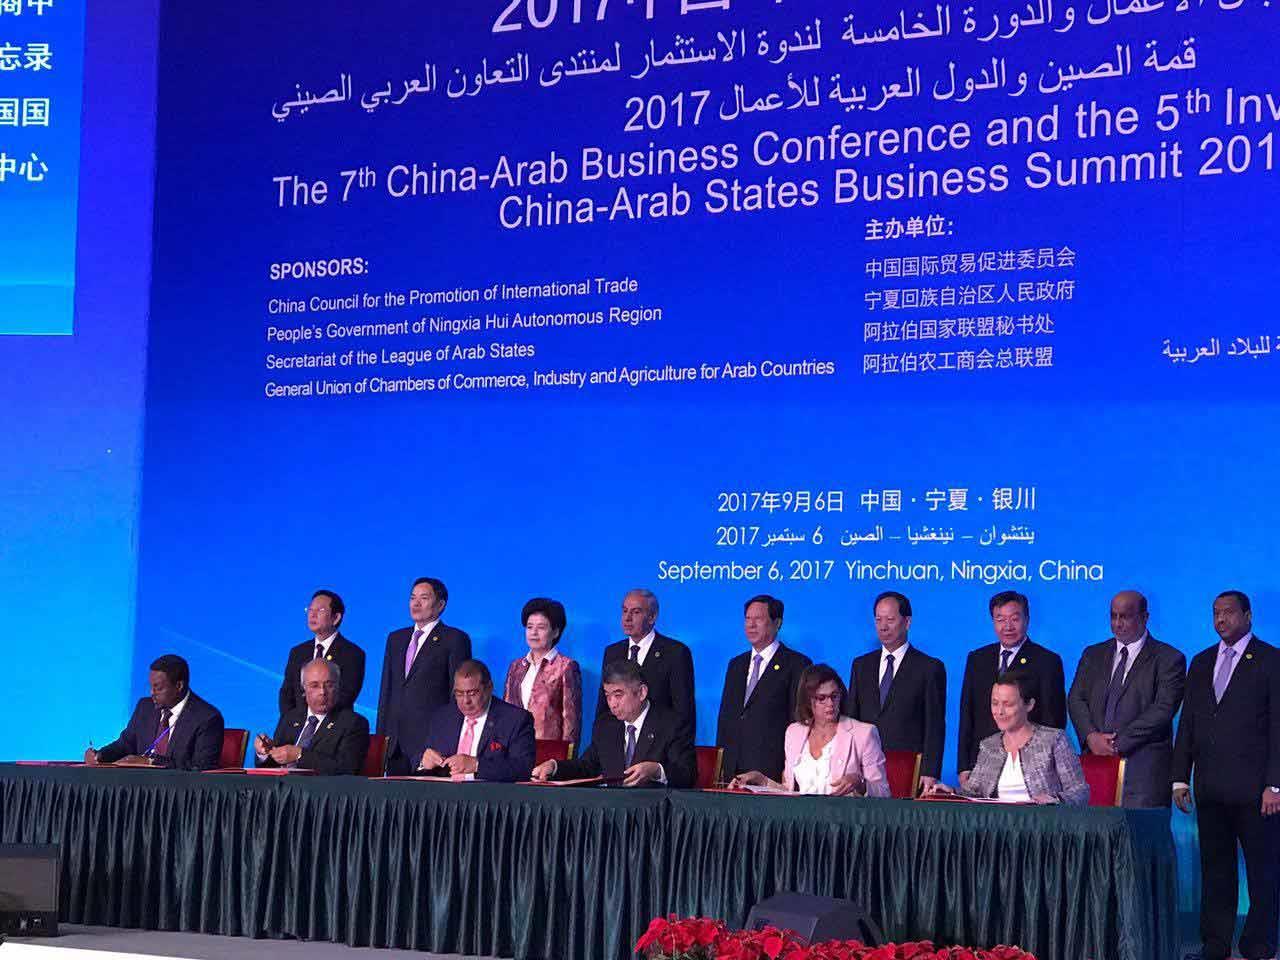 المجلس الصيني لتعزيز التجارة الدولية